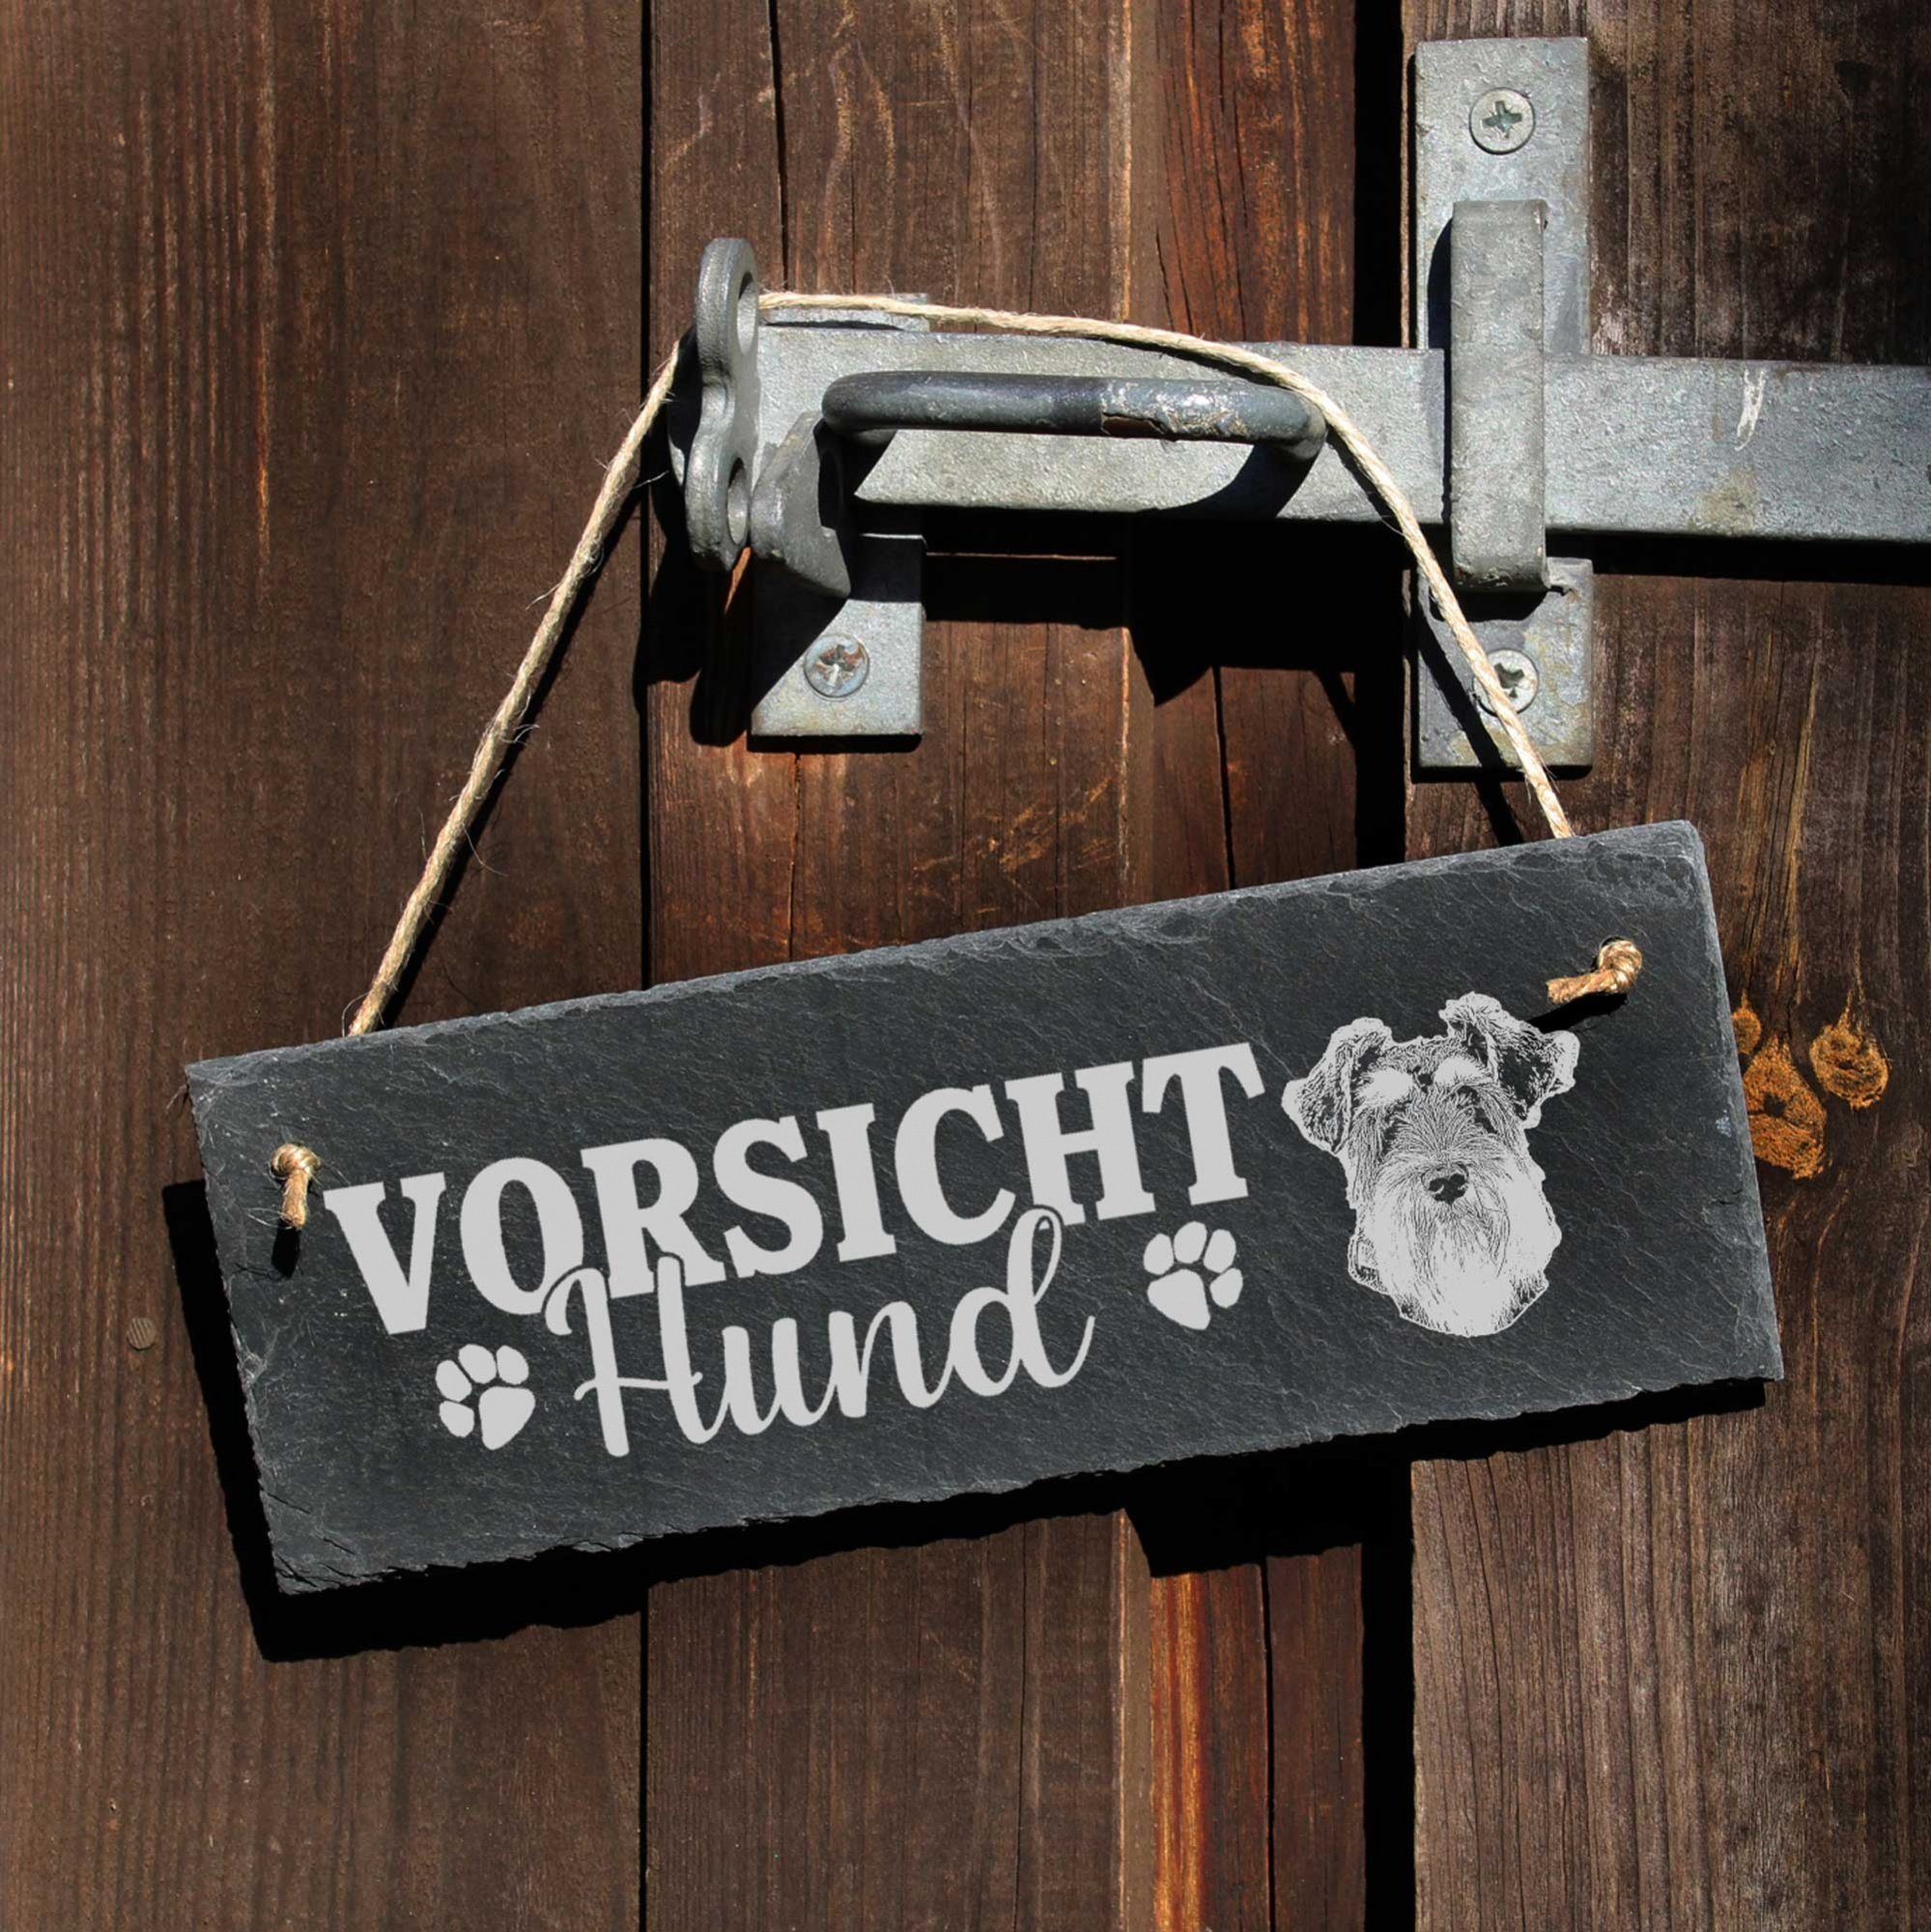 Dekolando Hund Hängedekoration 22x8cm Schild Vorsicht Zwergschnauzer